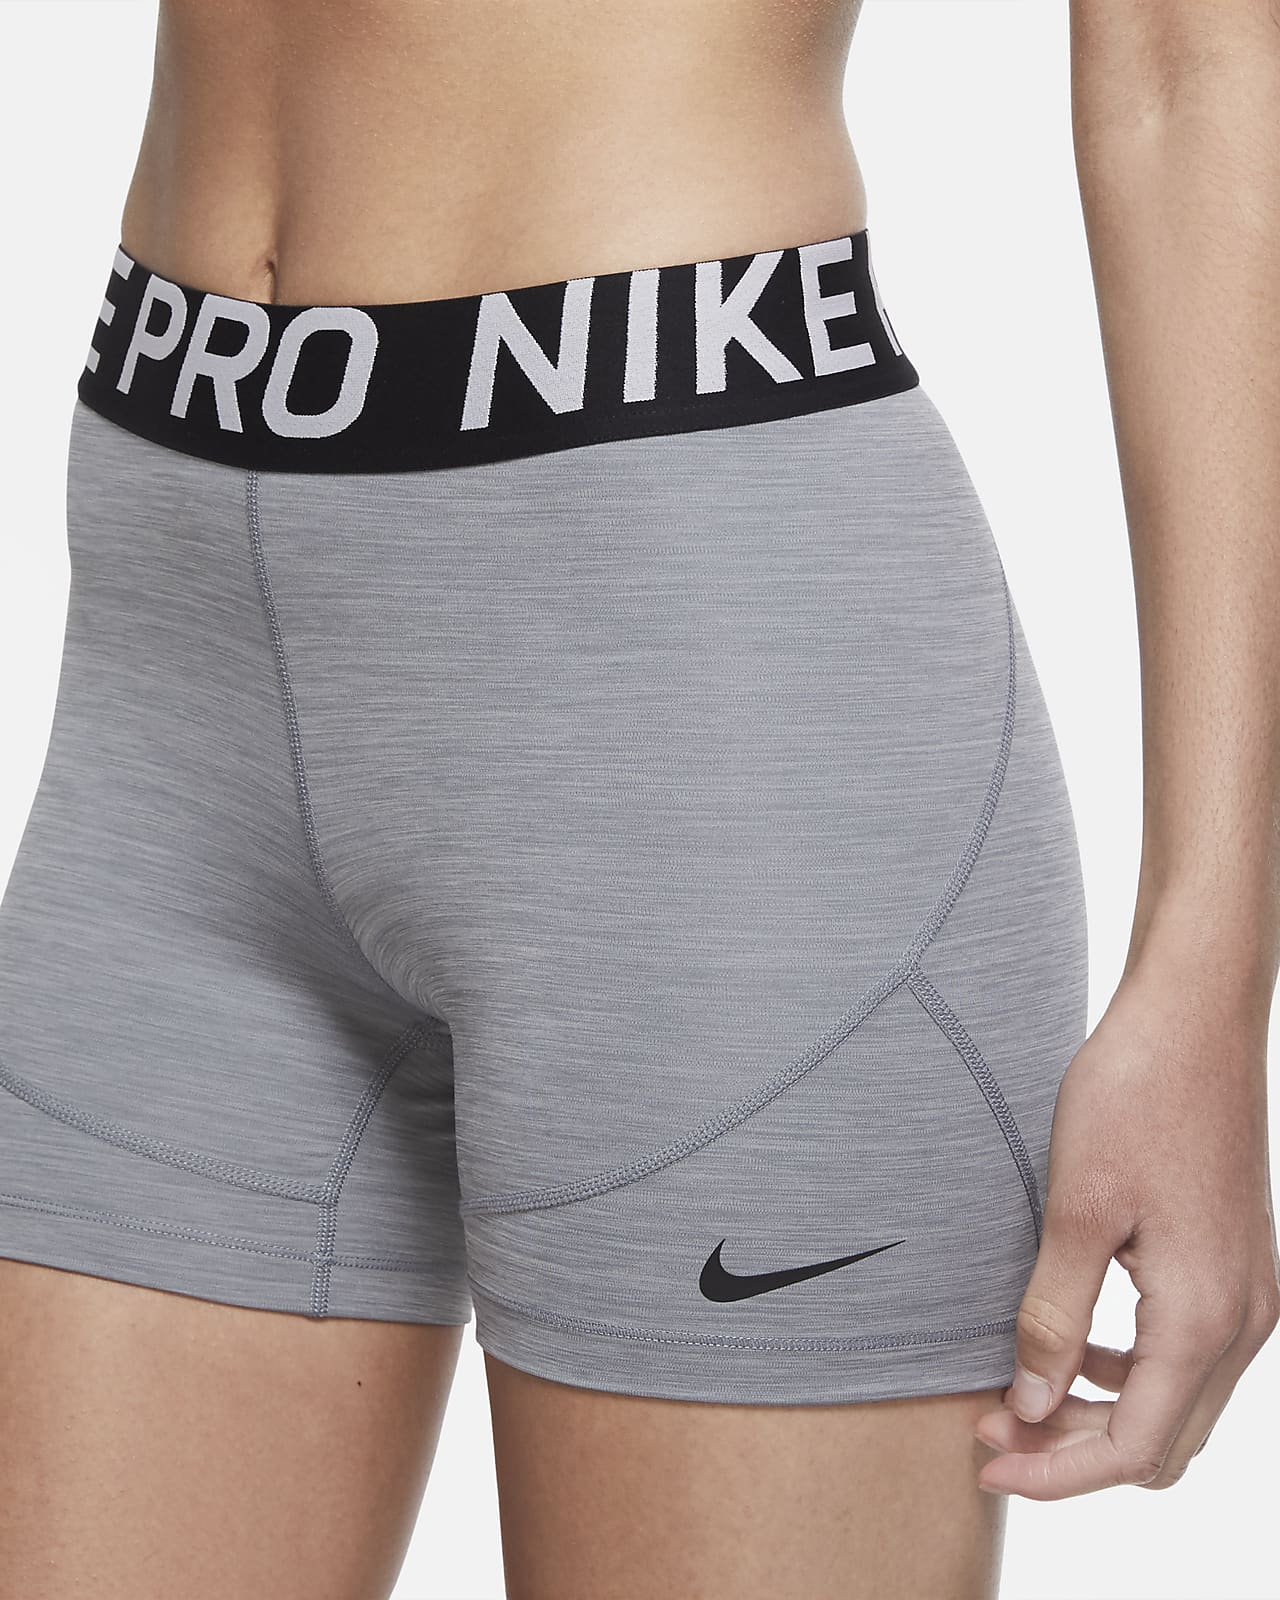 nike pro underwear women's